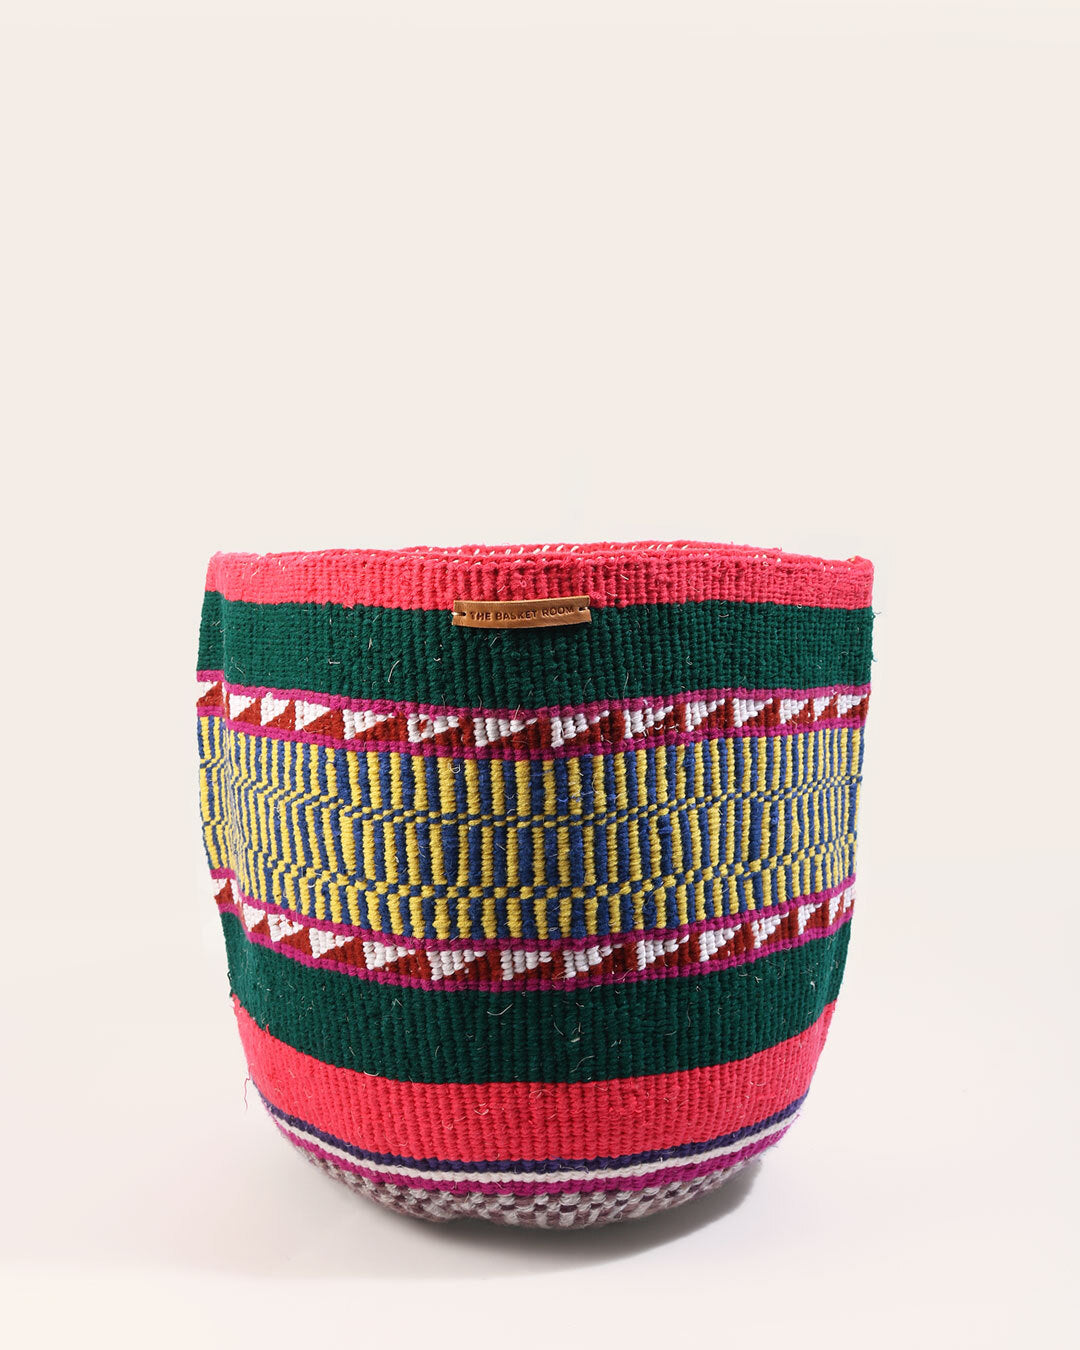 Kenyan Handwoven Basket, No 114